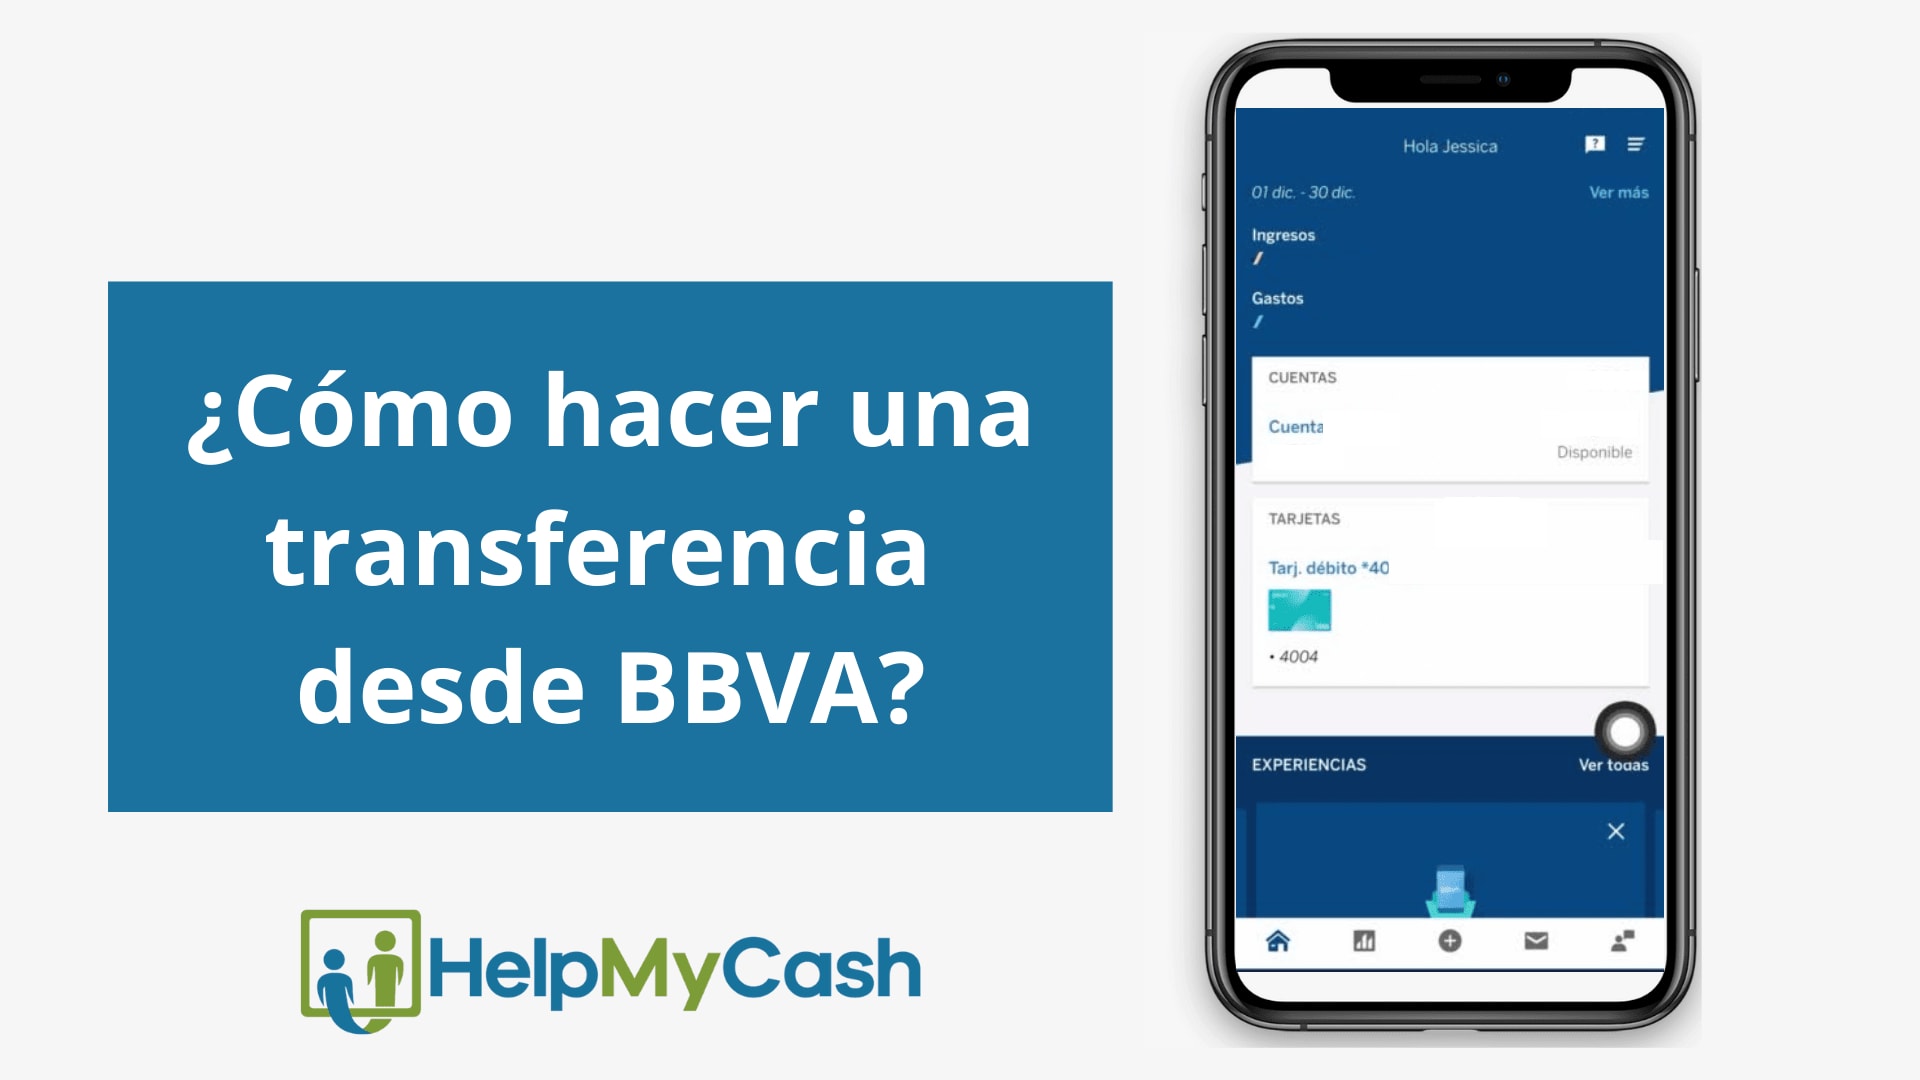 BBVA - ¿Cómo hacer una transferencia desde la 'app' de BBVA?